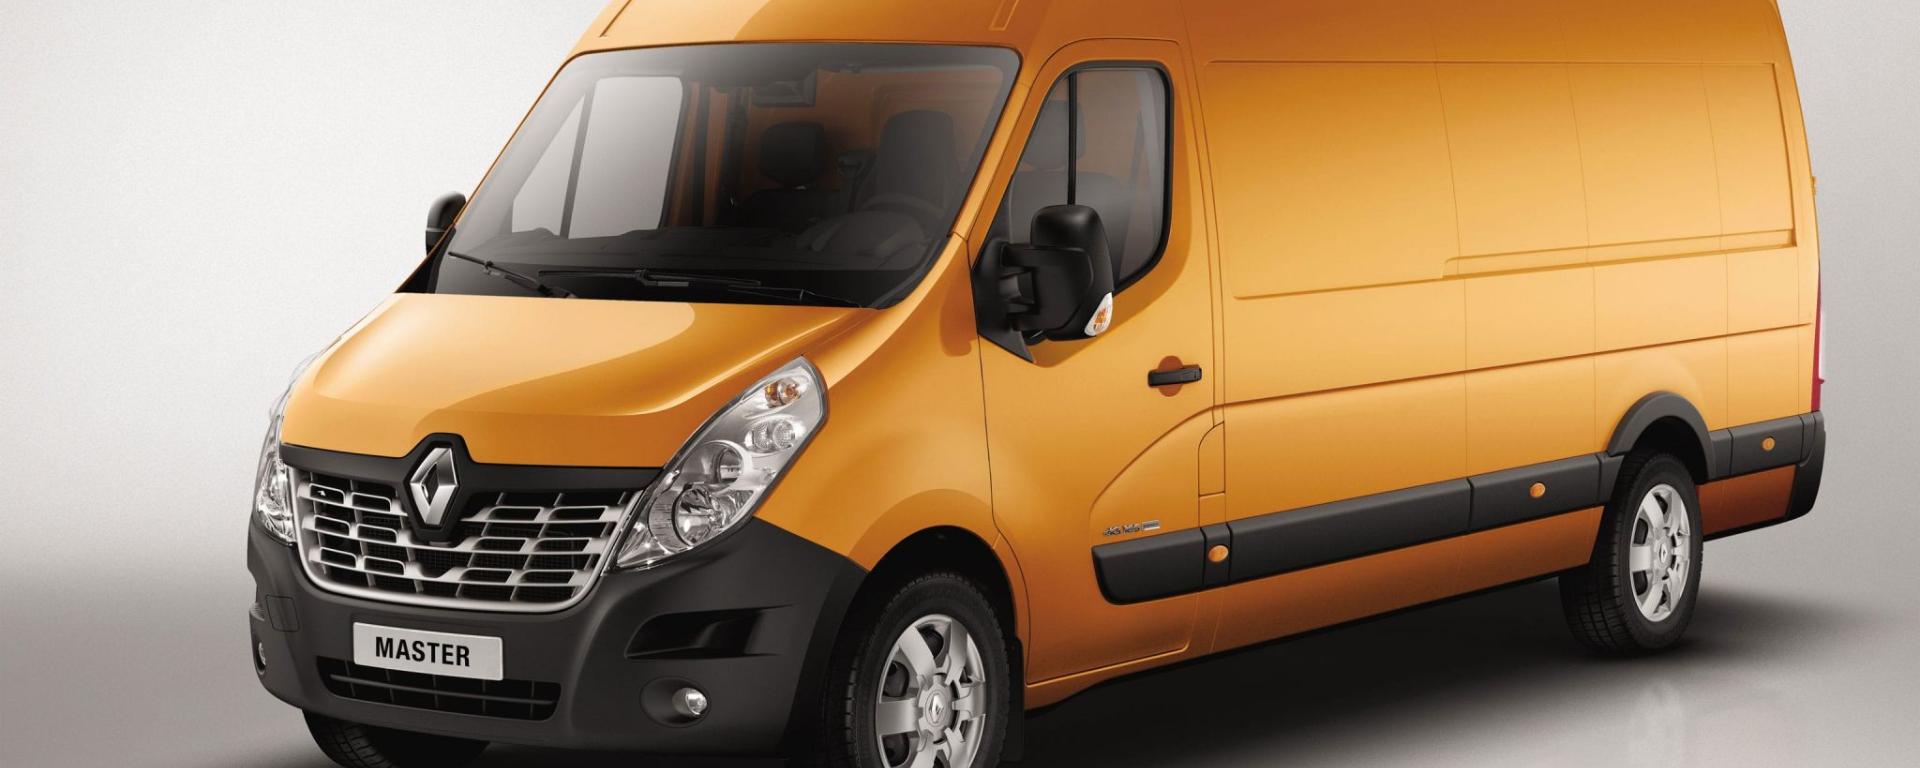 Renault Trucks Master leasen